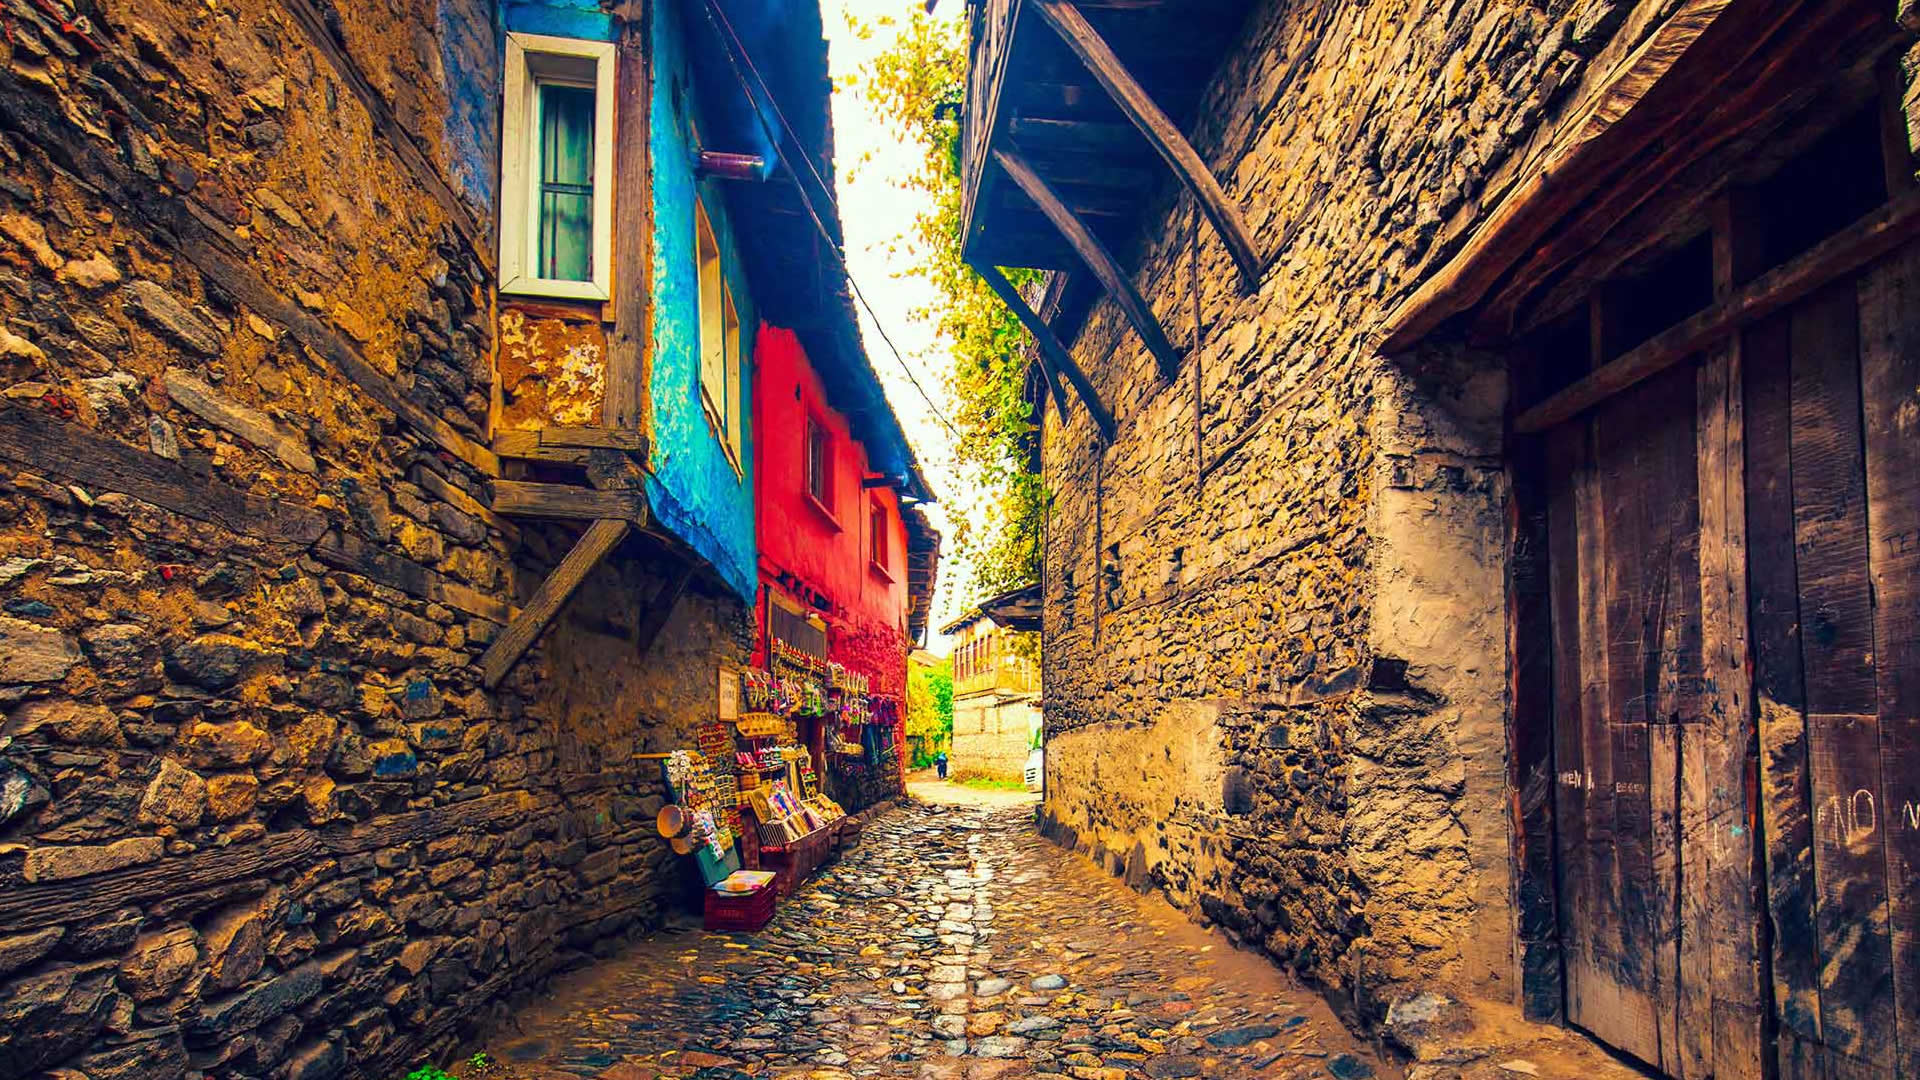 Cumalıkızık Bursa's Narrow Streets Smelling with History